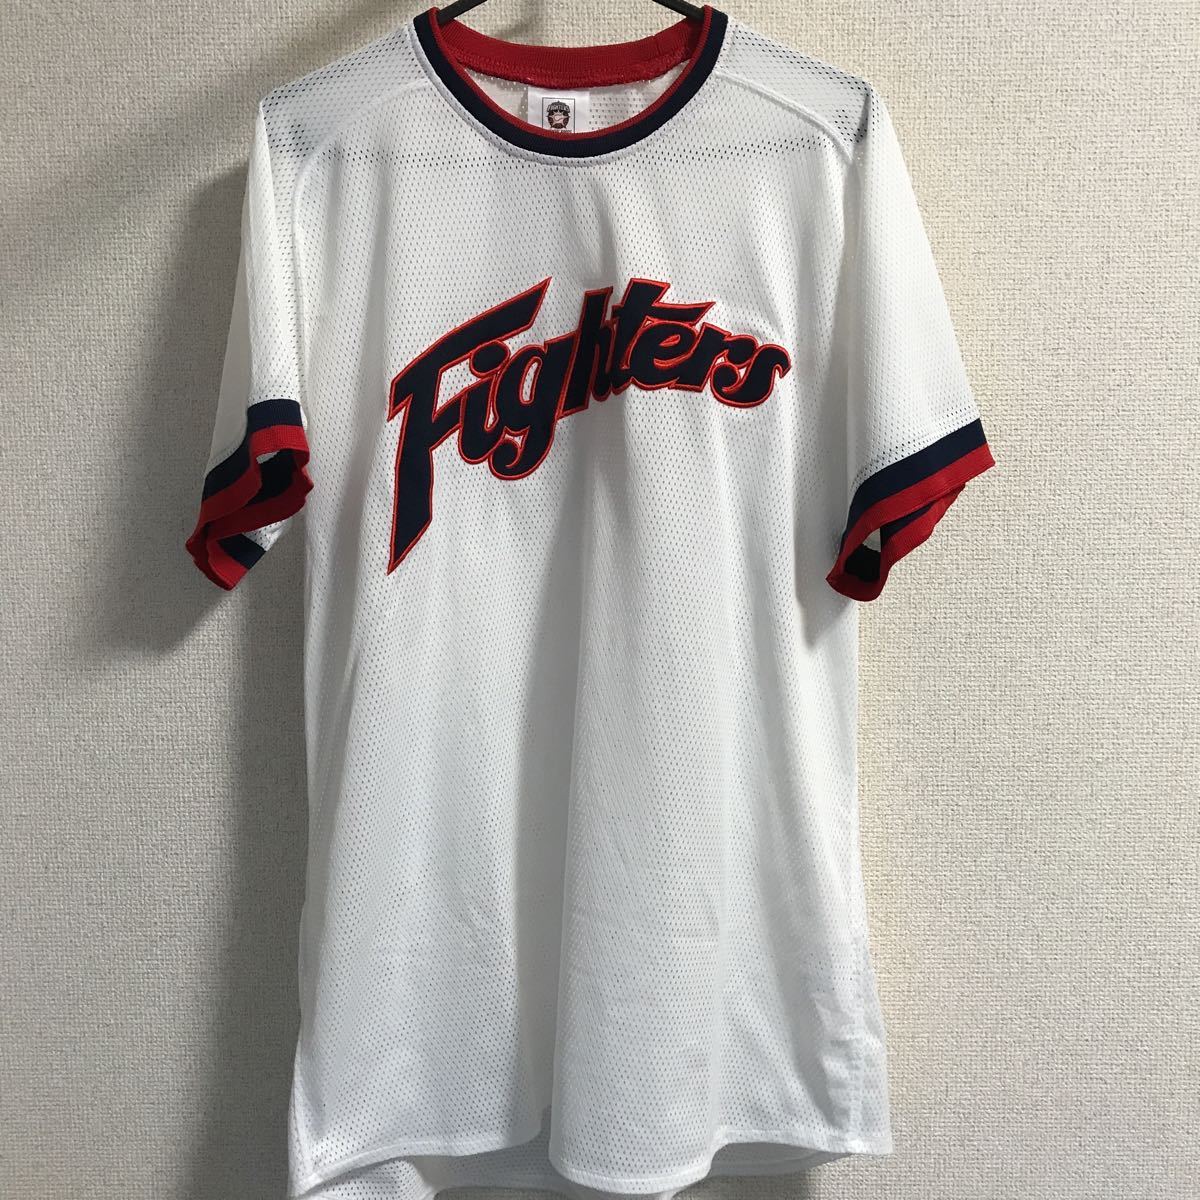 北海道日本ハムファイターズ レプリカTシャツ 復刻 半袖 メンズ Lサイズ プロ野球 ベースボールウェア オフィシャルグッズ ミズノの画像1